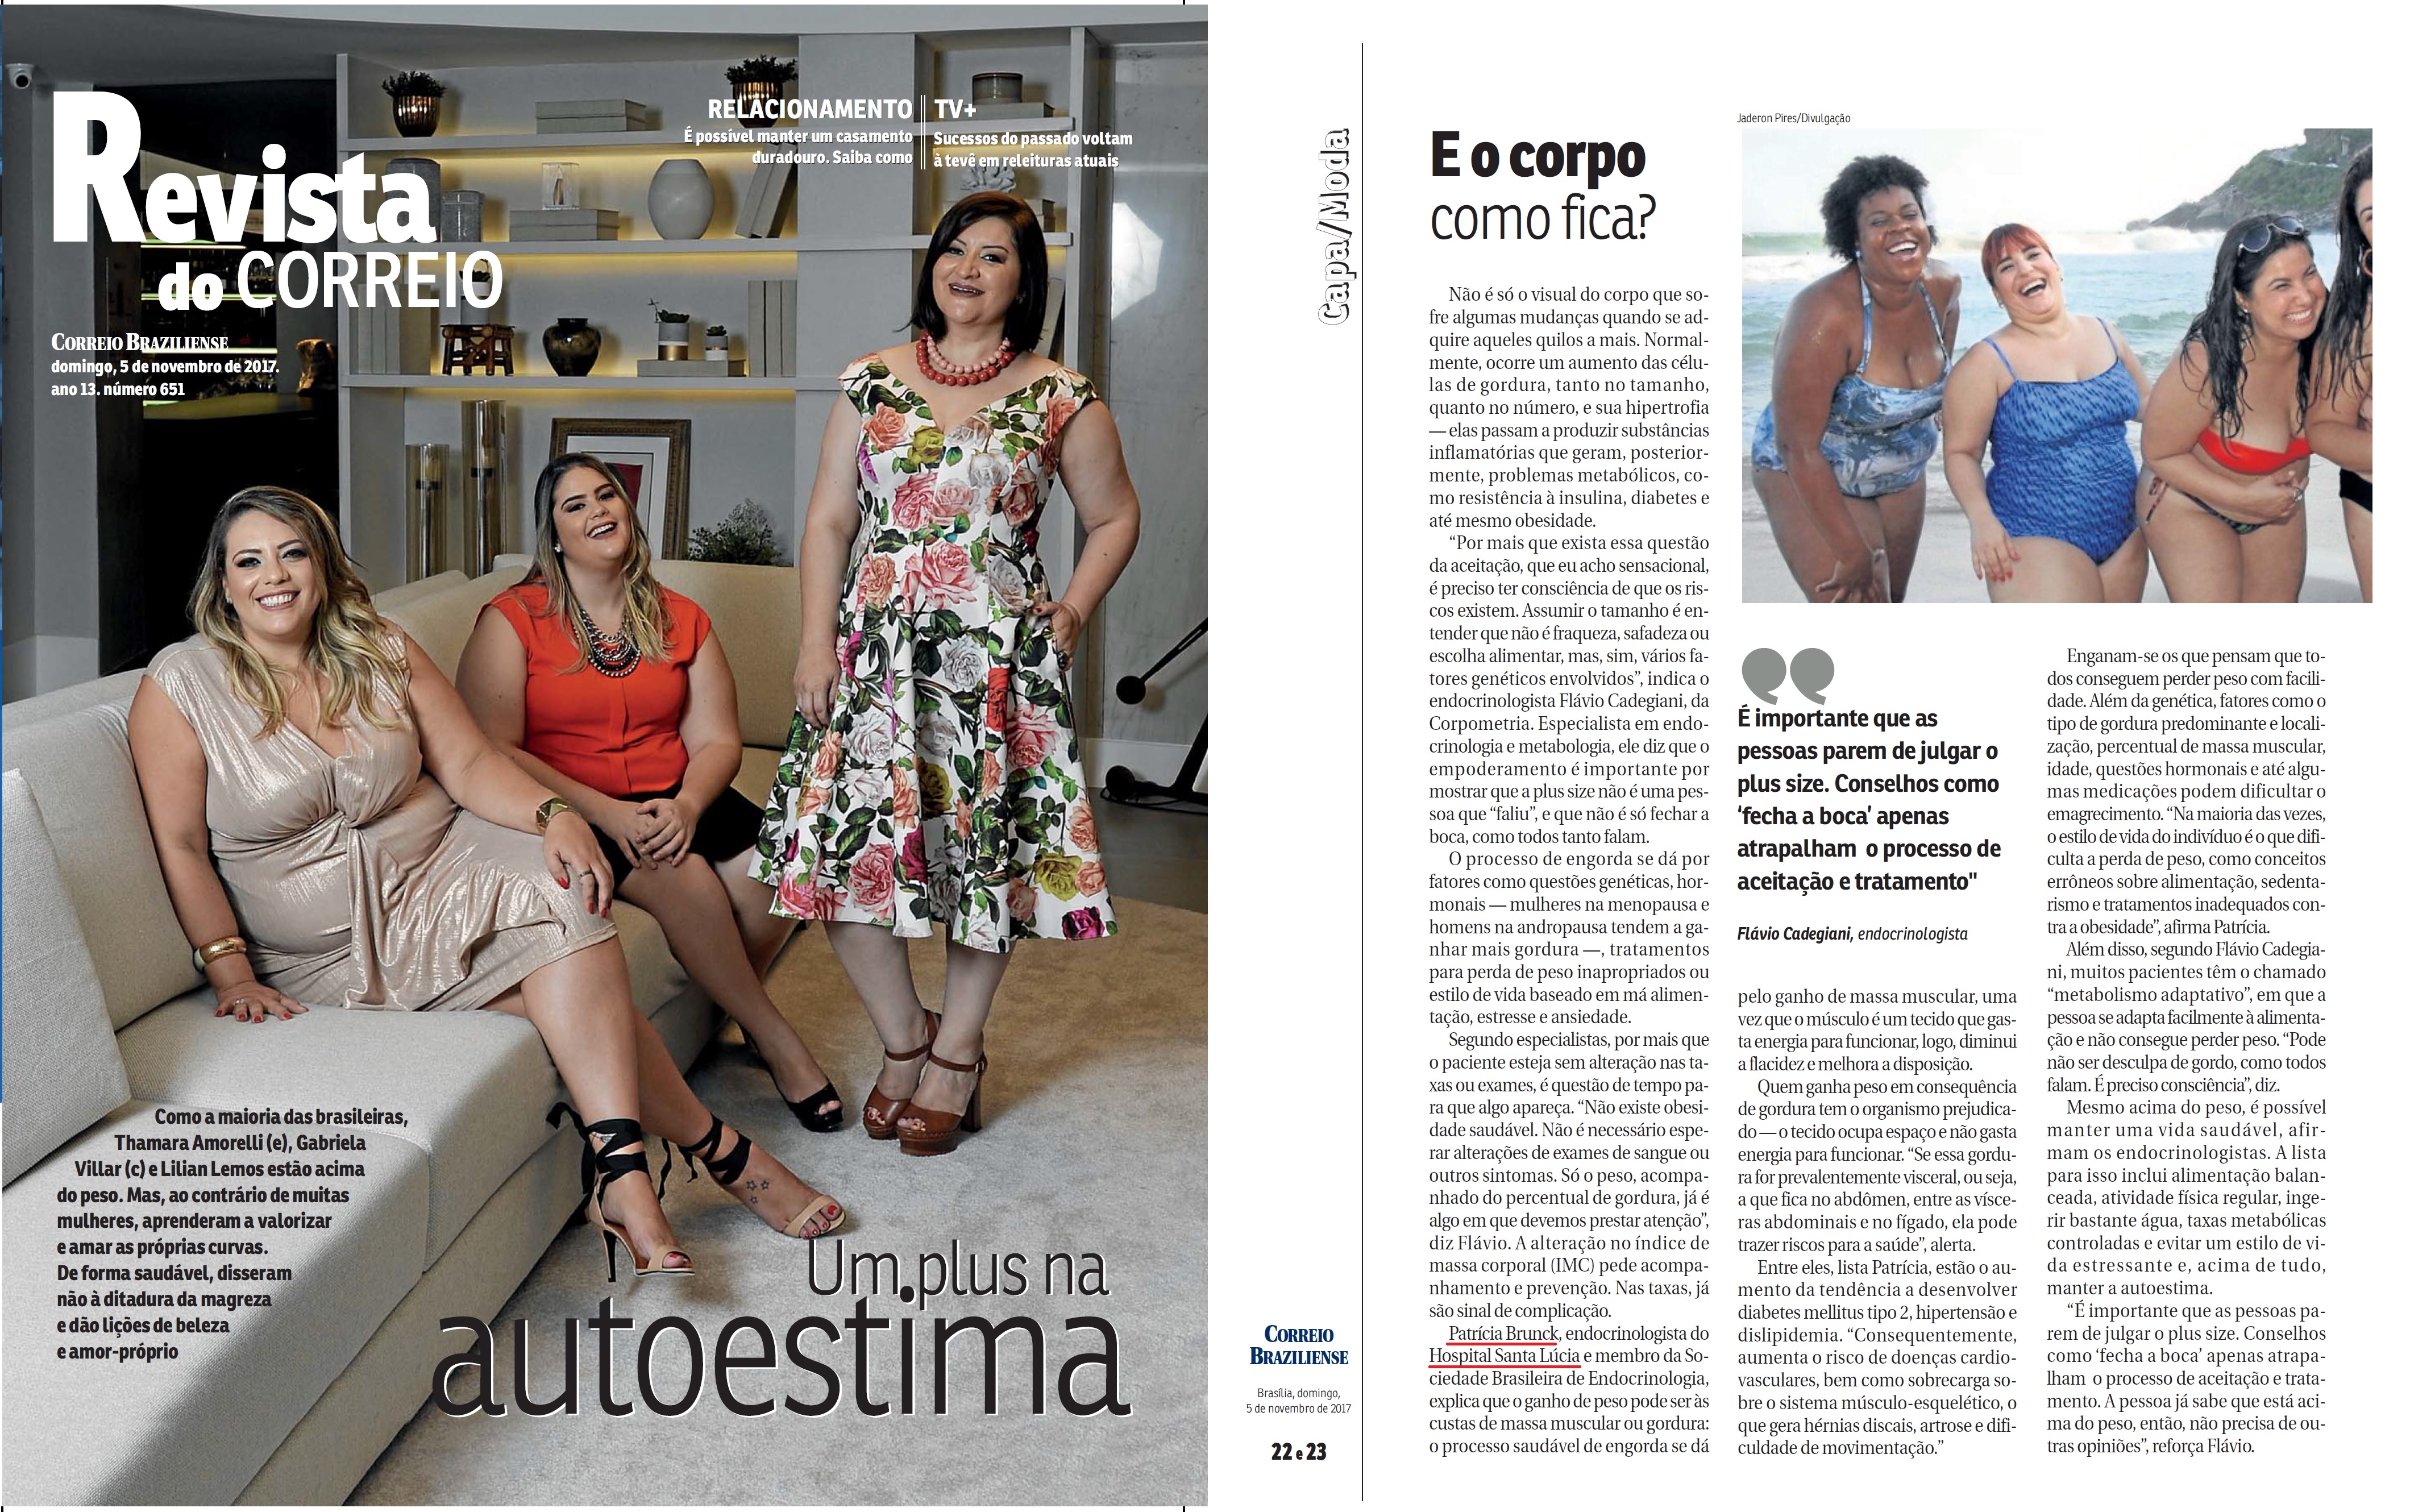 Revista do Correio (capa) - Dra. Patrícia Brunck HSL - 05-11-2017